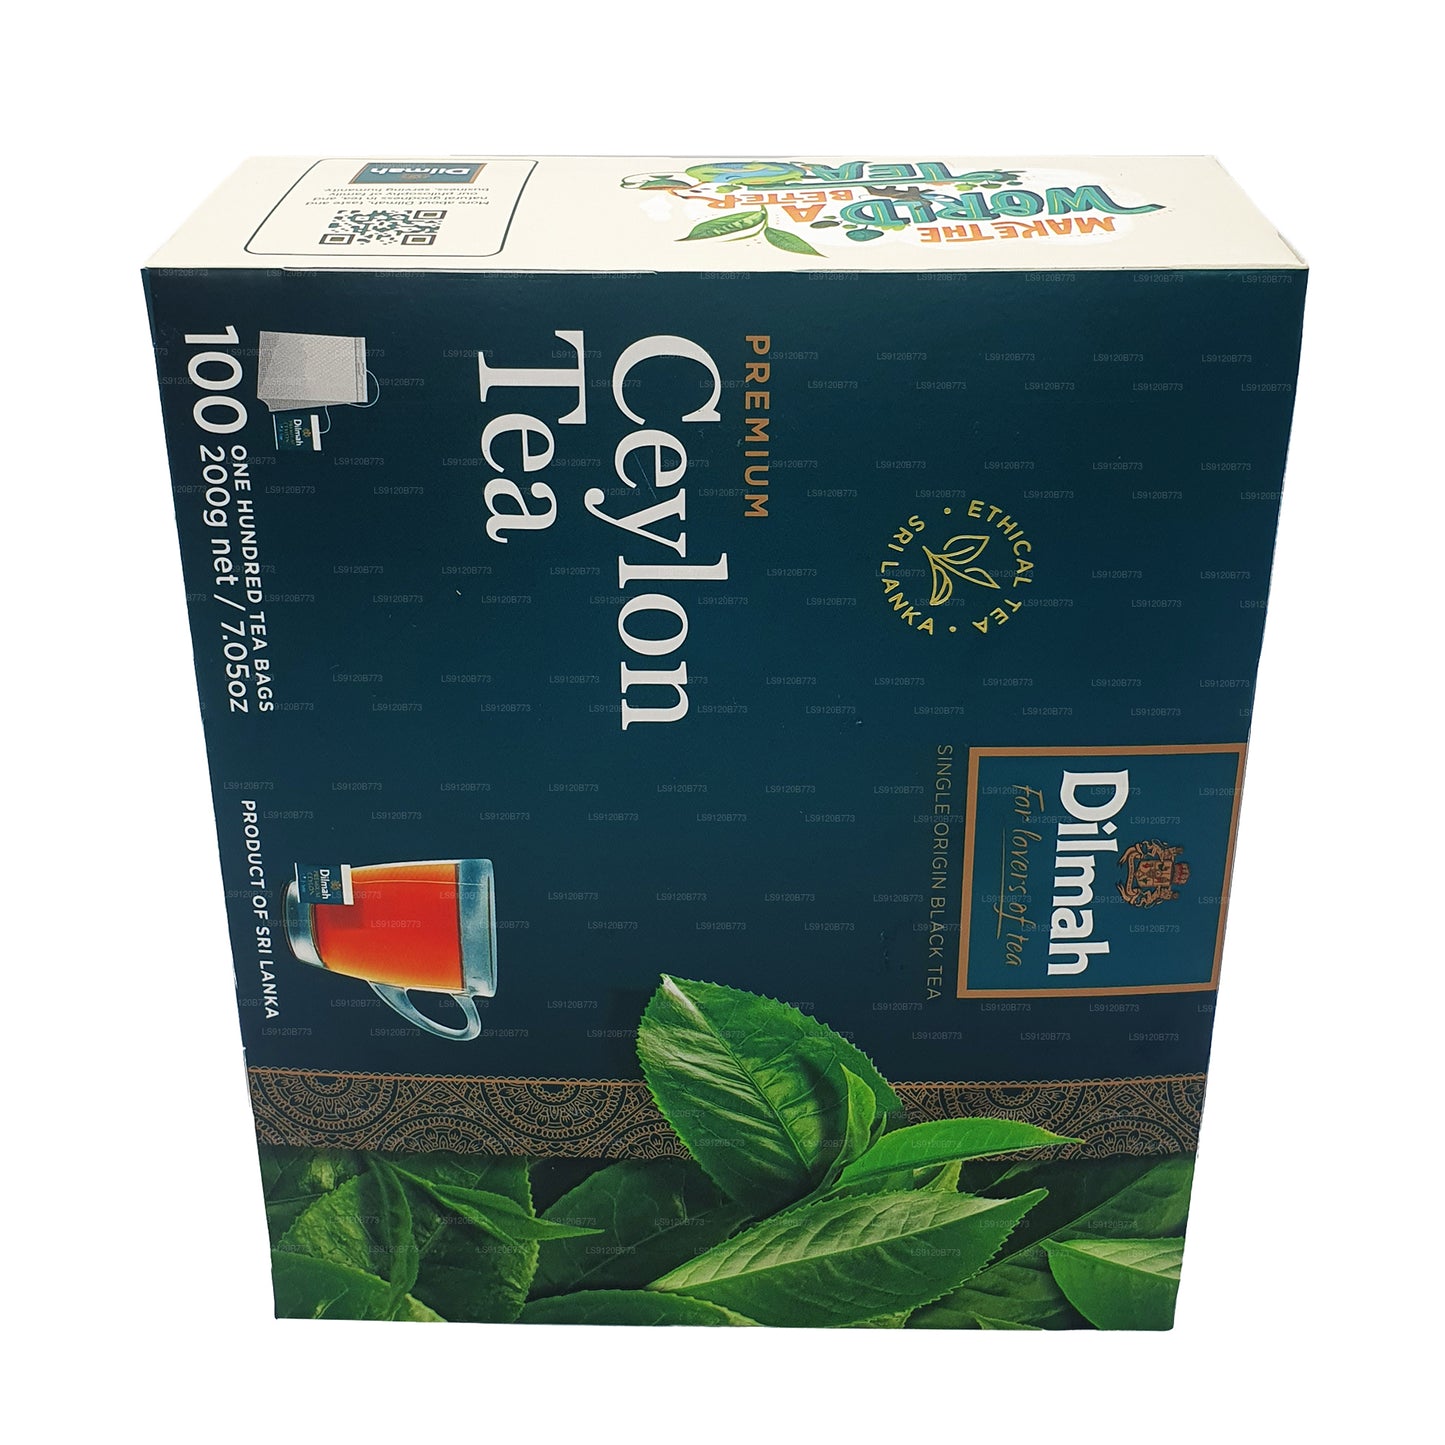 Dilmah Premium Ceylon Tea